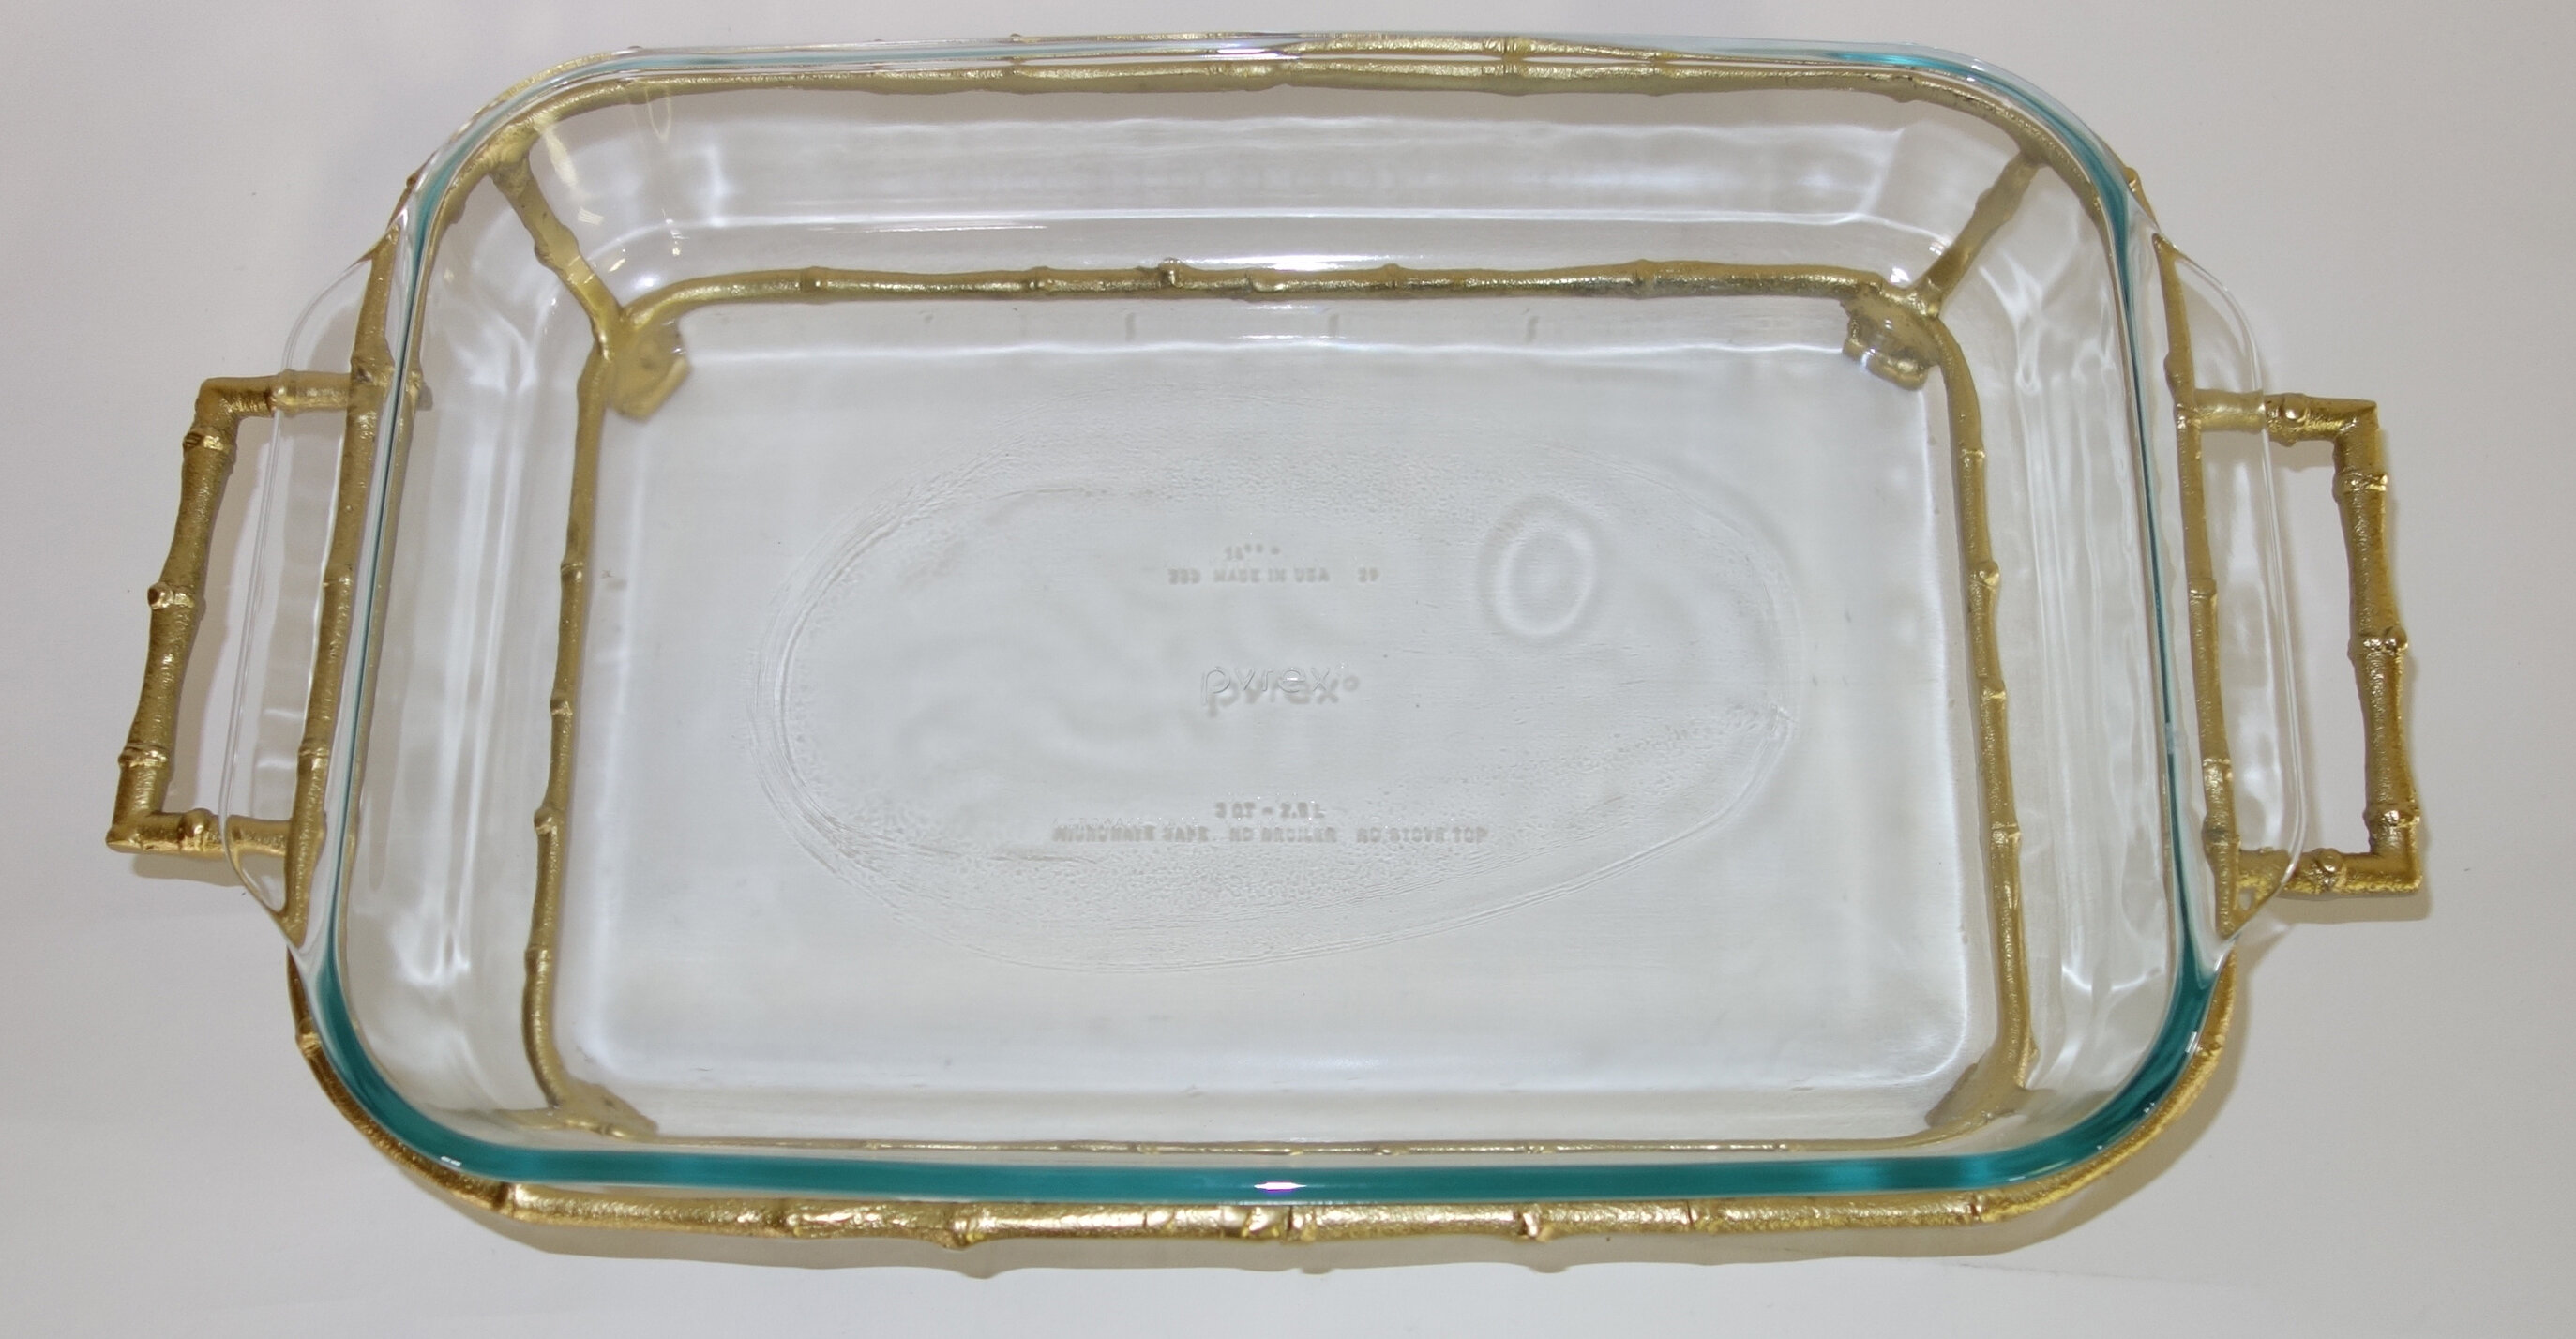 https://assets.wfcdn.com/im/53056383/compr-r85/1124/112497818/dessauhome-3-qt-glass-rectangular-pyrex-baking-dish.jpg